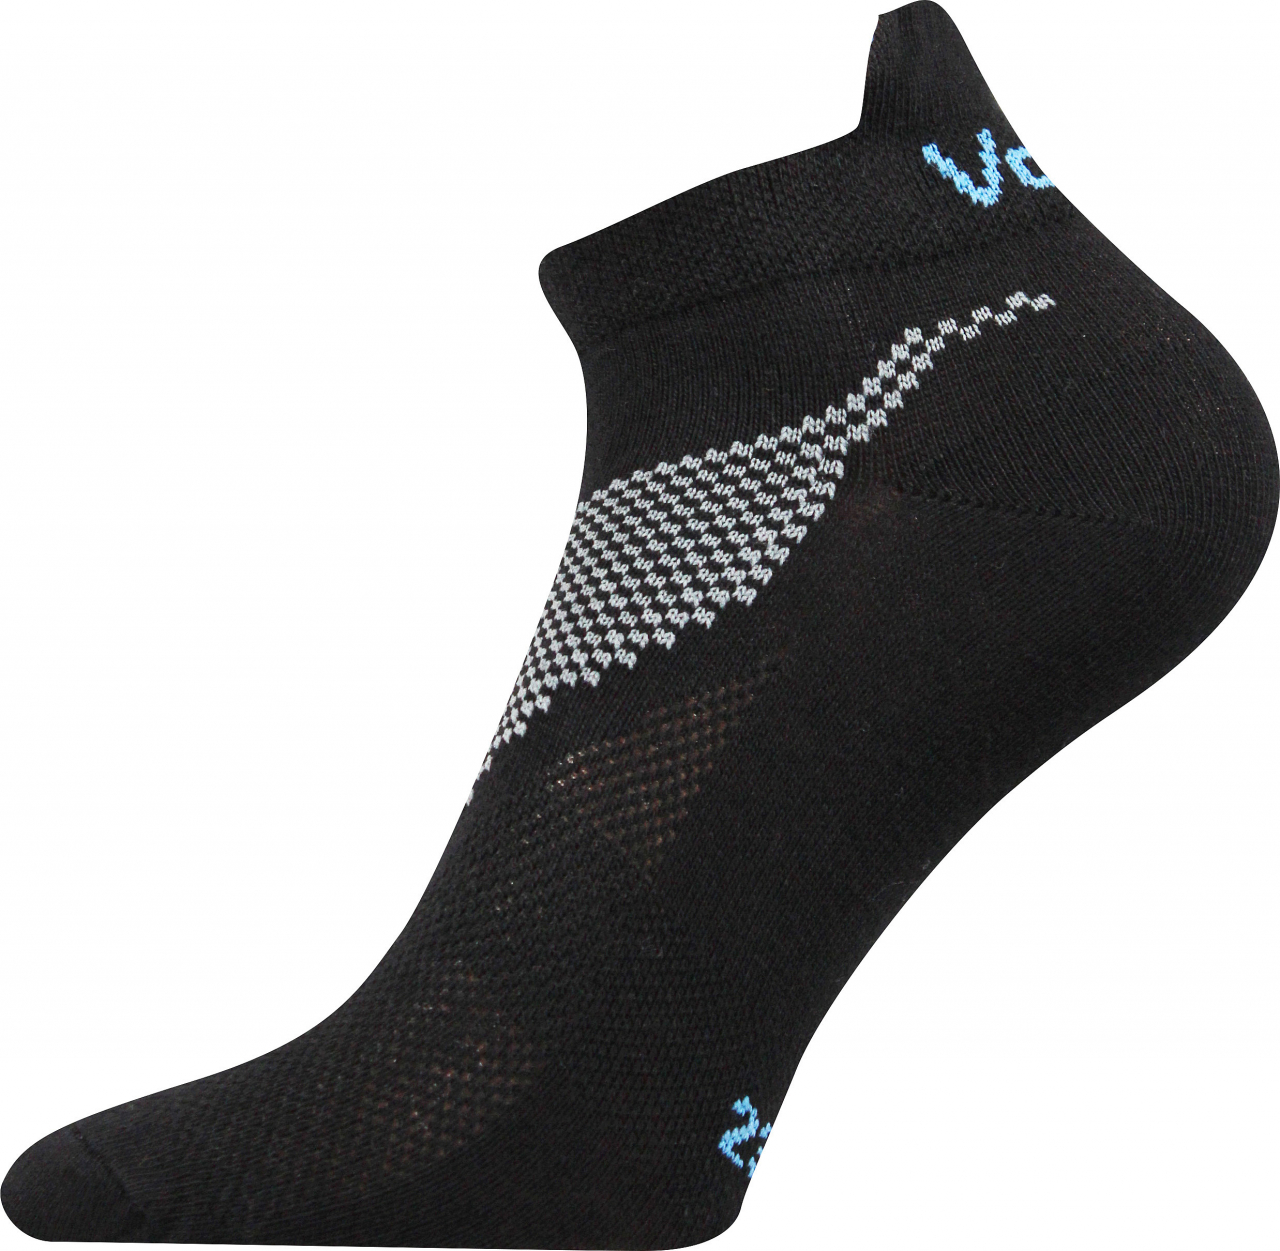 Ponožky sportovní nízké Voxx Iris - černé, 35-38